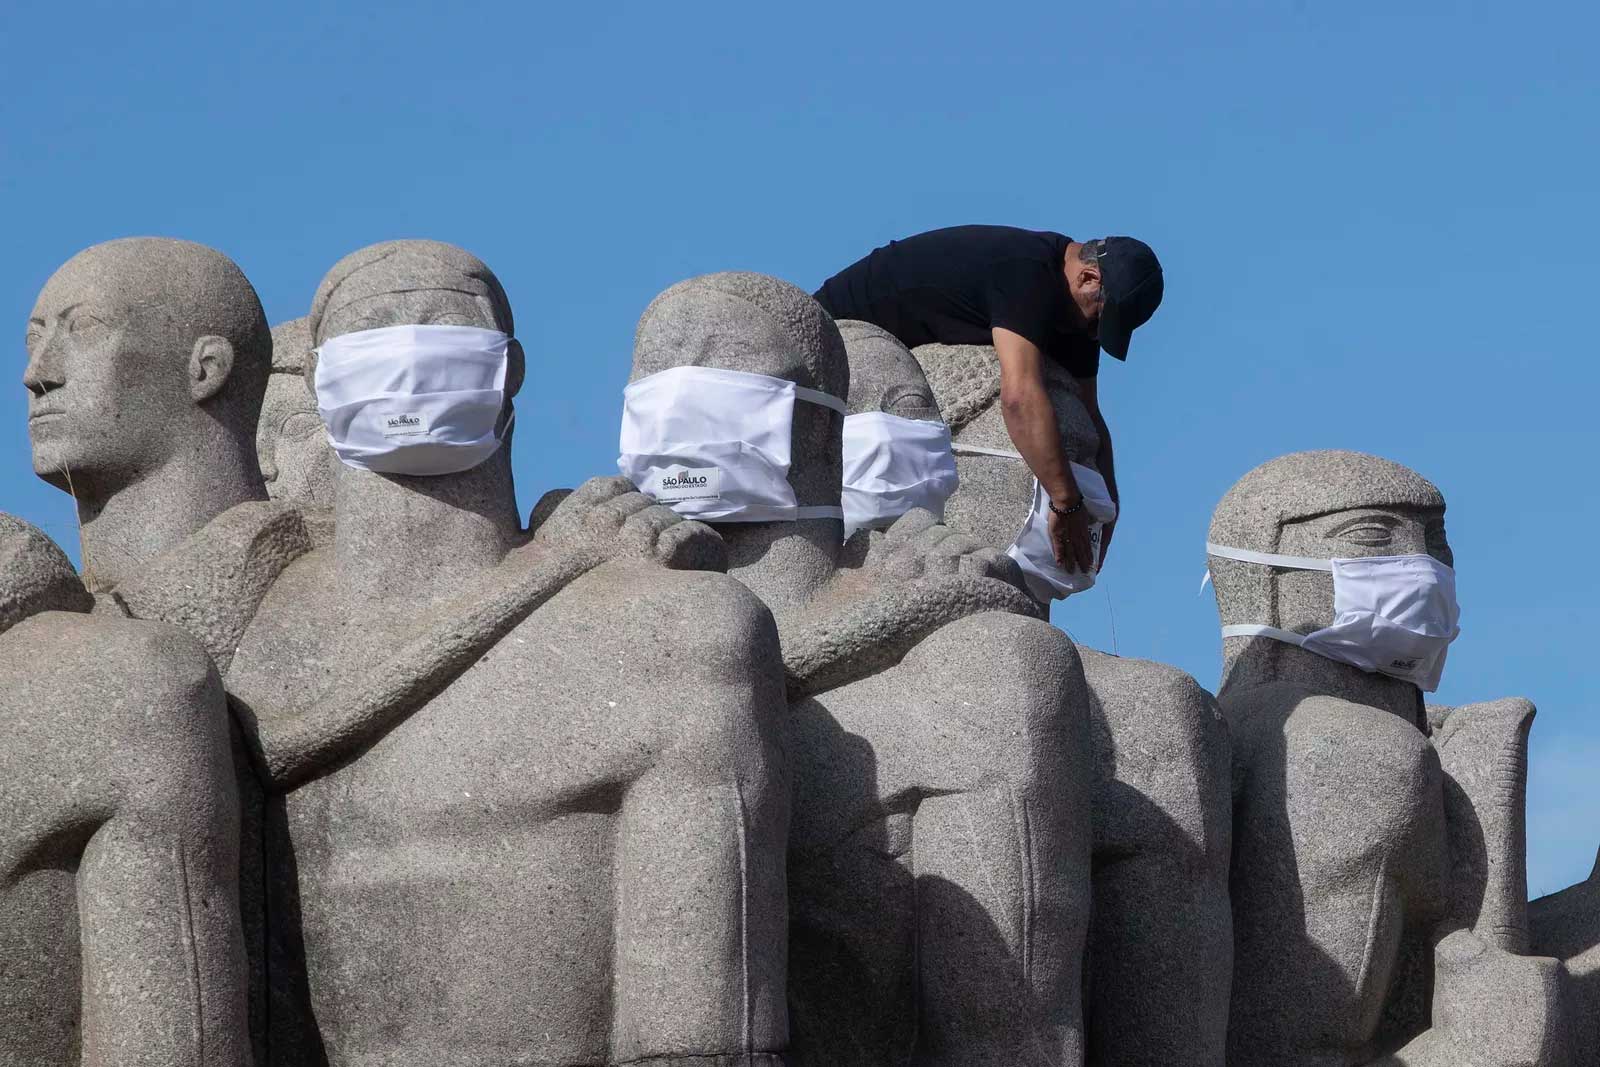 
 12 de maio - Trabalhador coloca máscaras no 'Monumento às bandeiras' para promover o uso de máscaras em meio à pandemia de coronavírus, em São Paulo — Foto: Andre Penner/AP